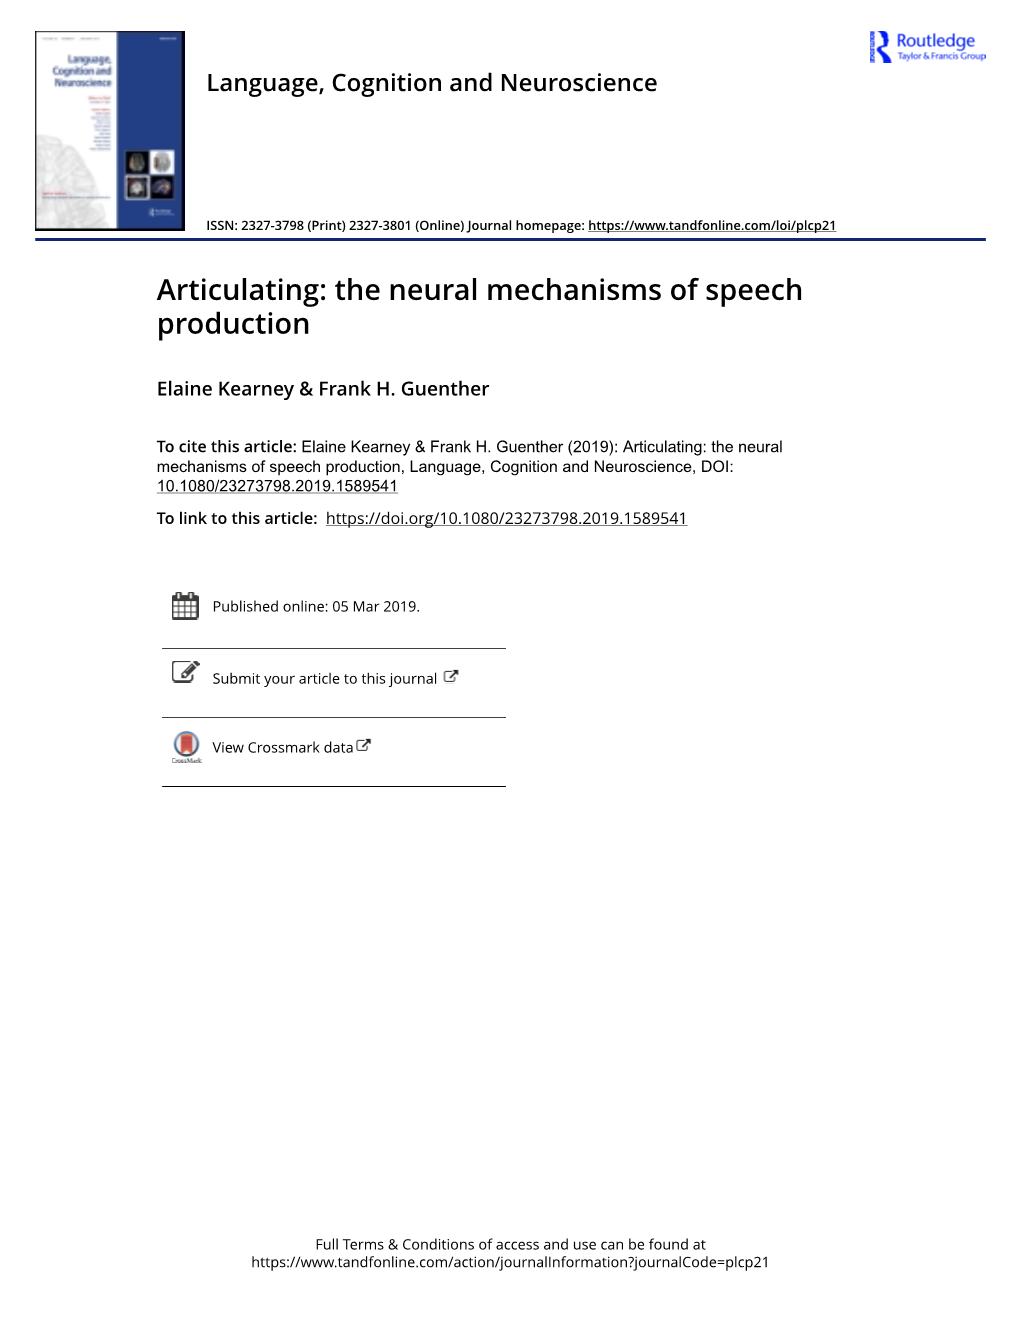 The Neural Mechanisms of Speech Production